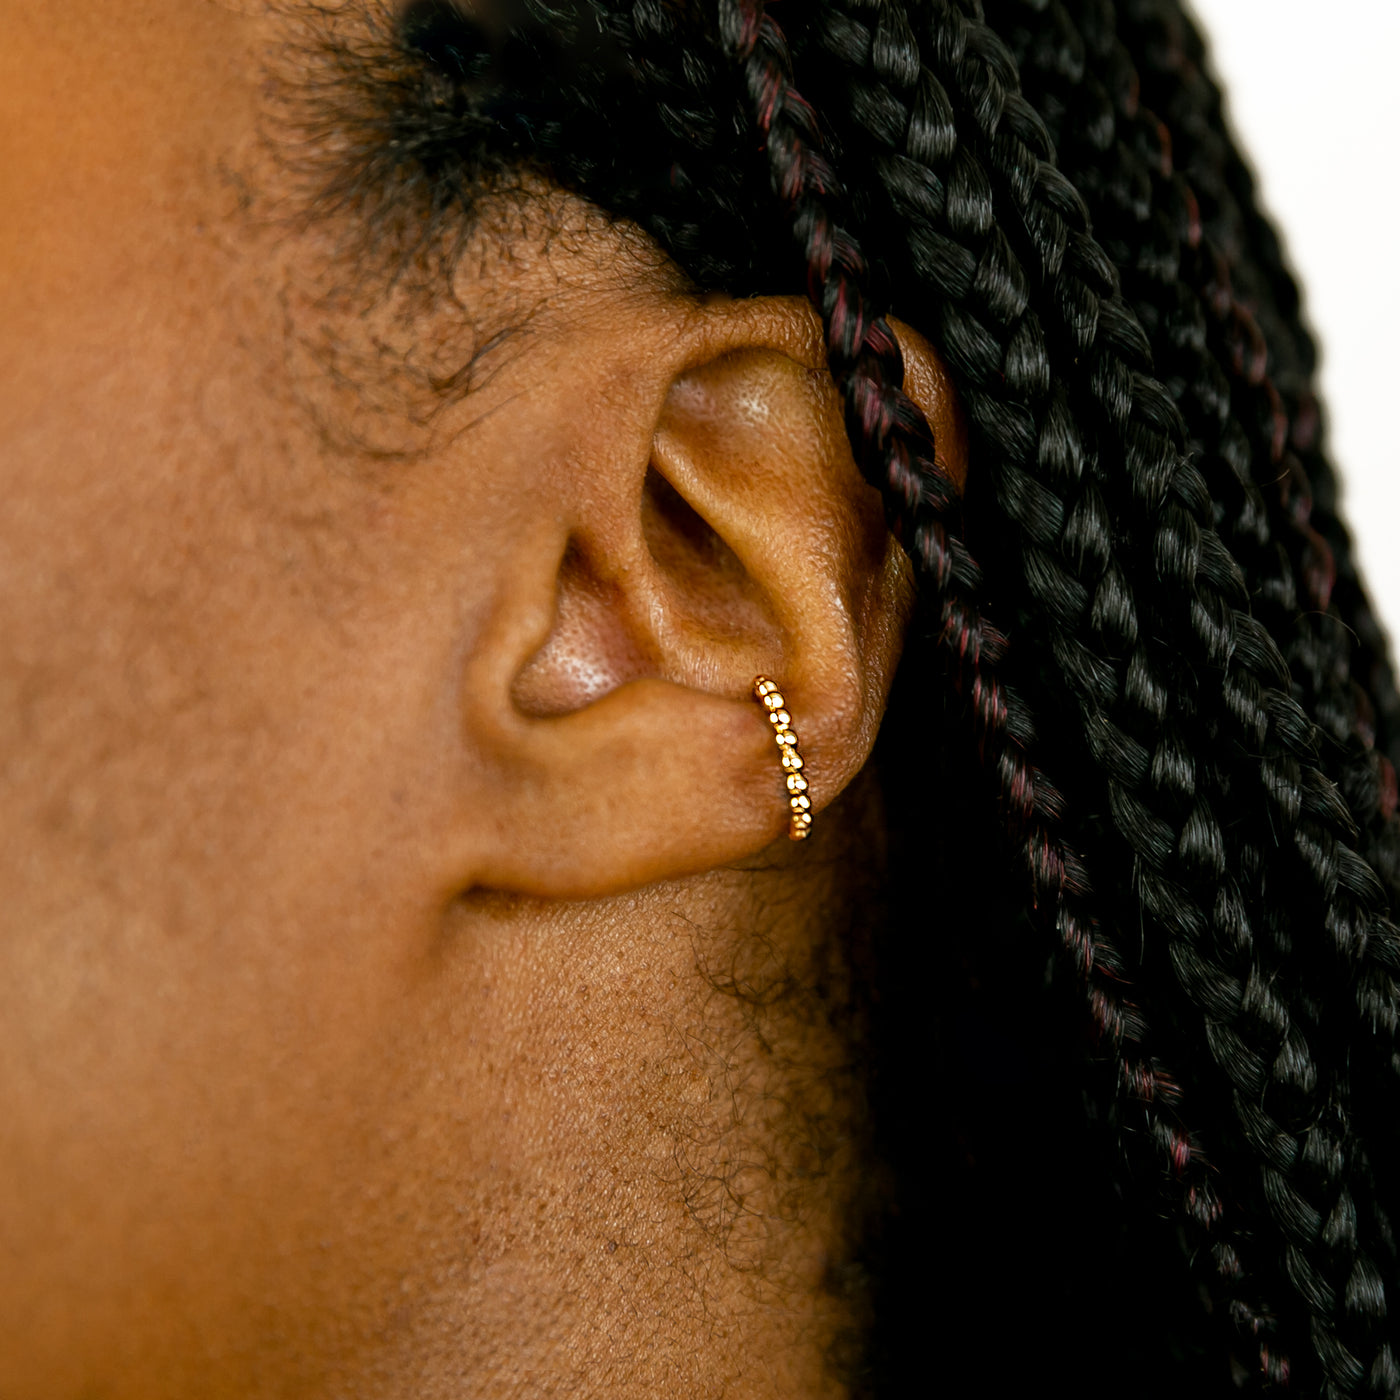 Shimmer Dot Ear Cuff + Huggie Earrings Set